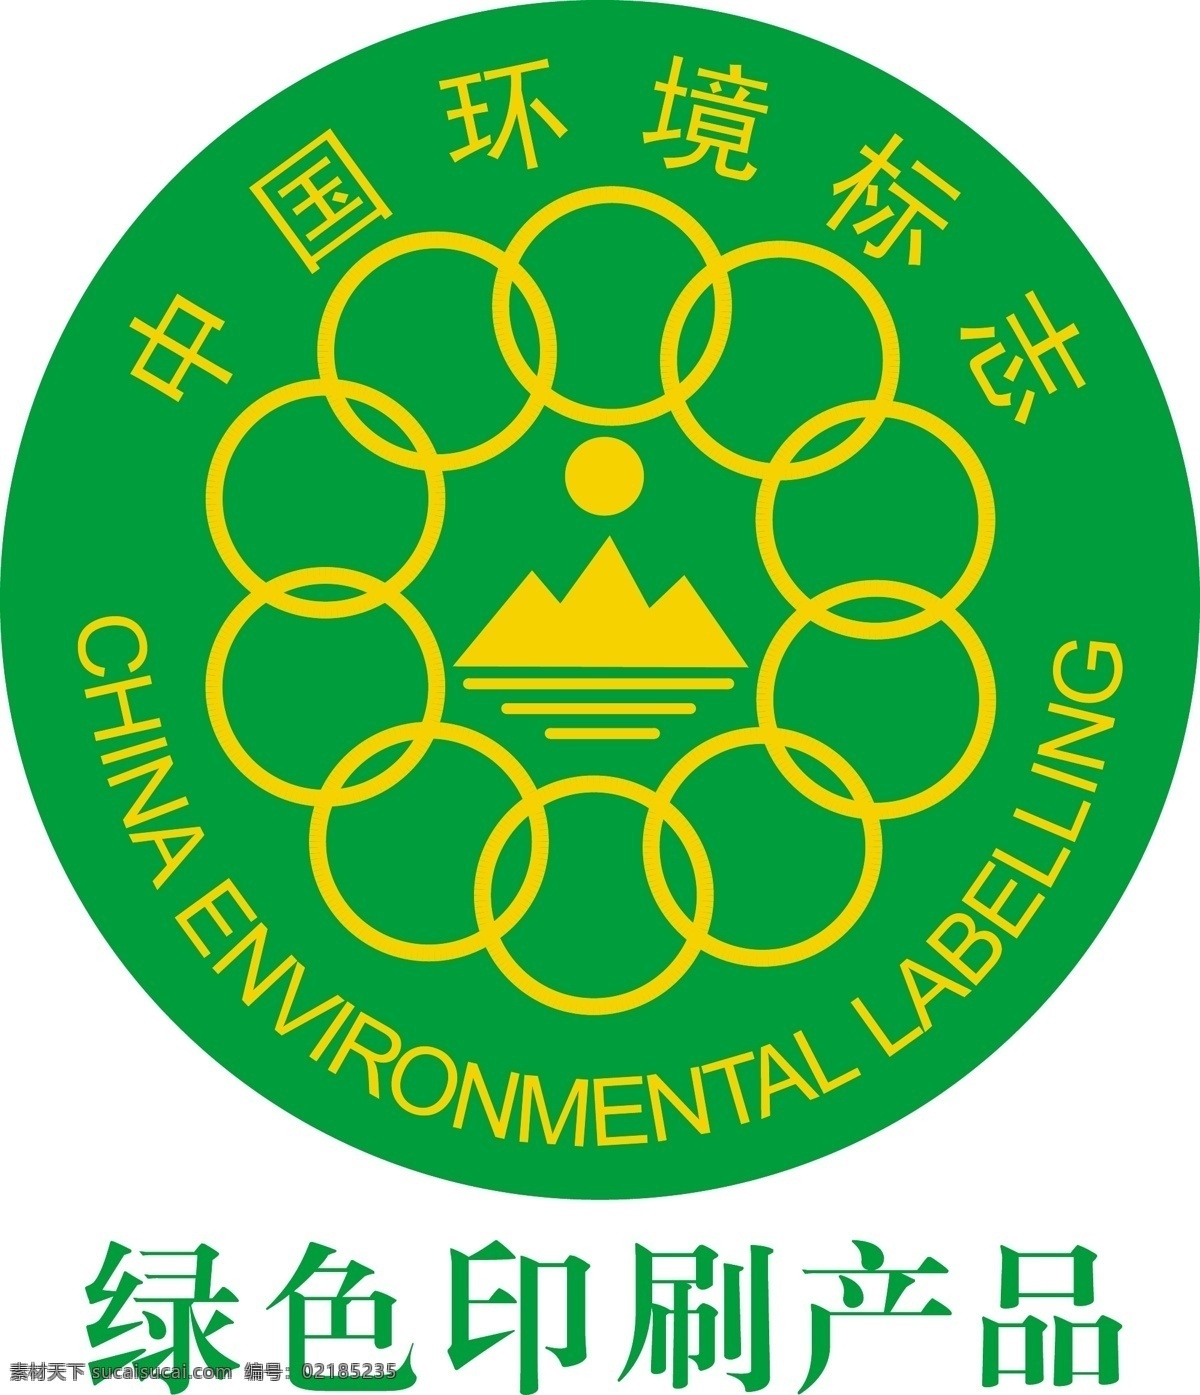 中国环境标志 绿色印刷 环境标志 十环标记 绿环标志 标志图标 公共标识标志